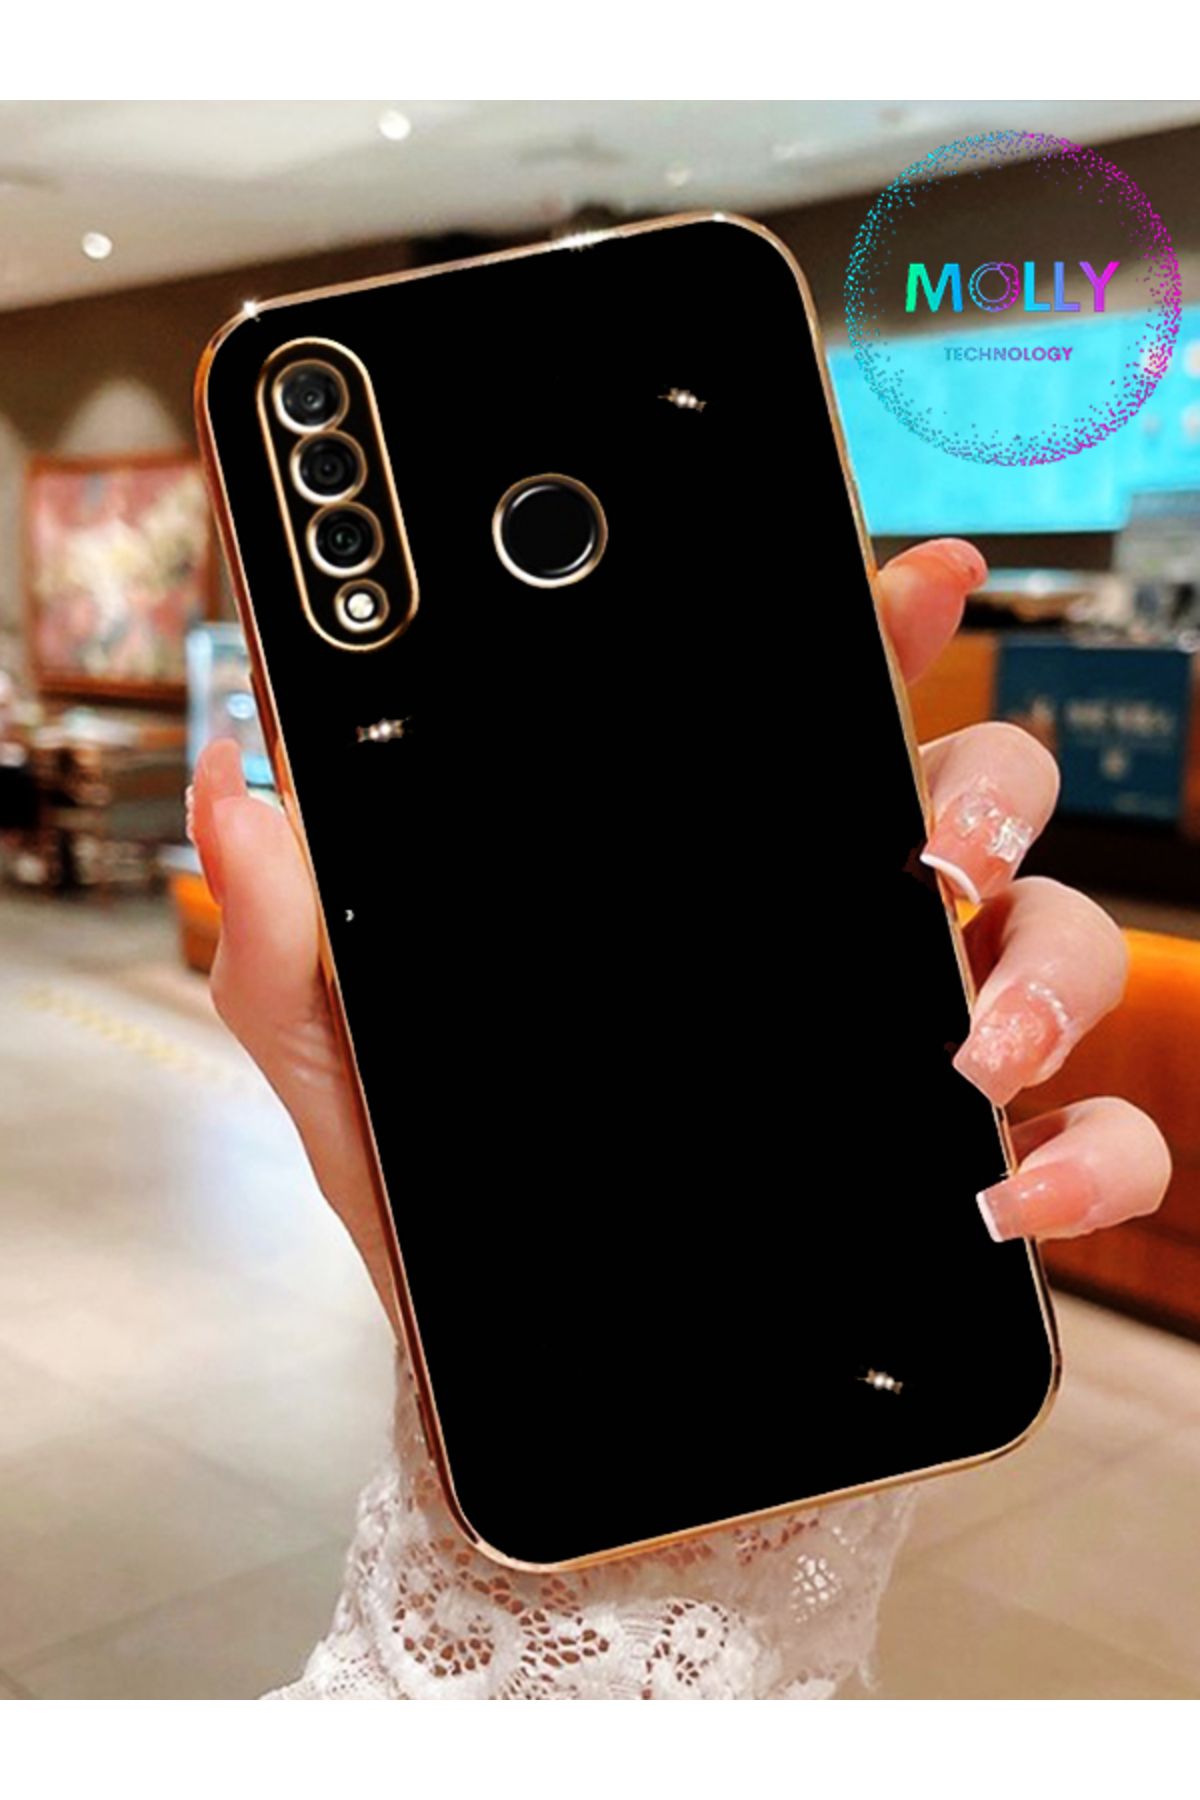 Molly Technology Huawei P30 Lite Için Siyah Kenarları Gold Detaylı Lüks Silikon Kılıf